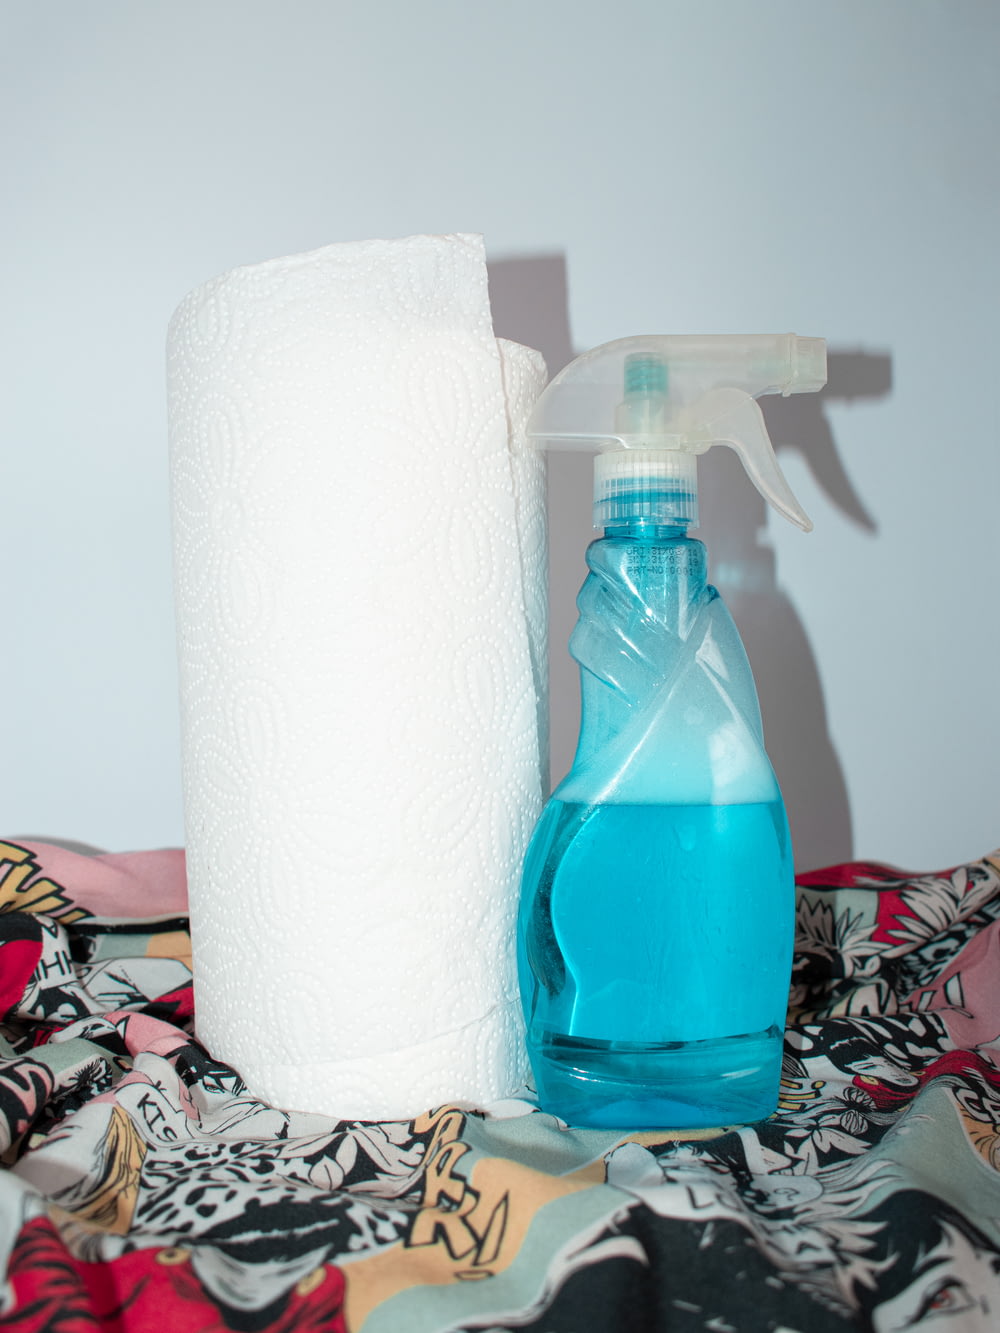 Rouleau de papier de soie blanc à côté d’une bouteille en plastique bleue